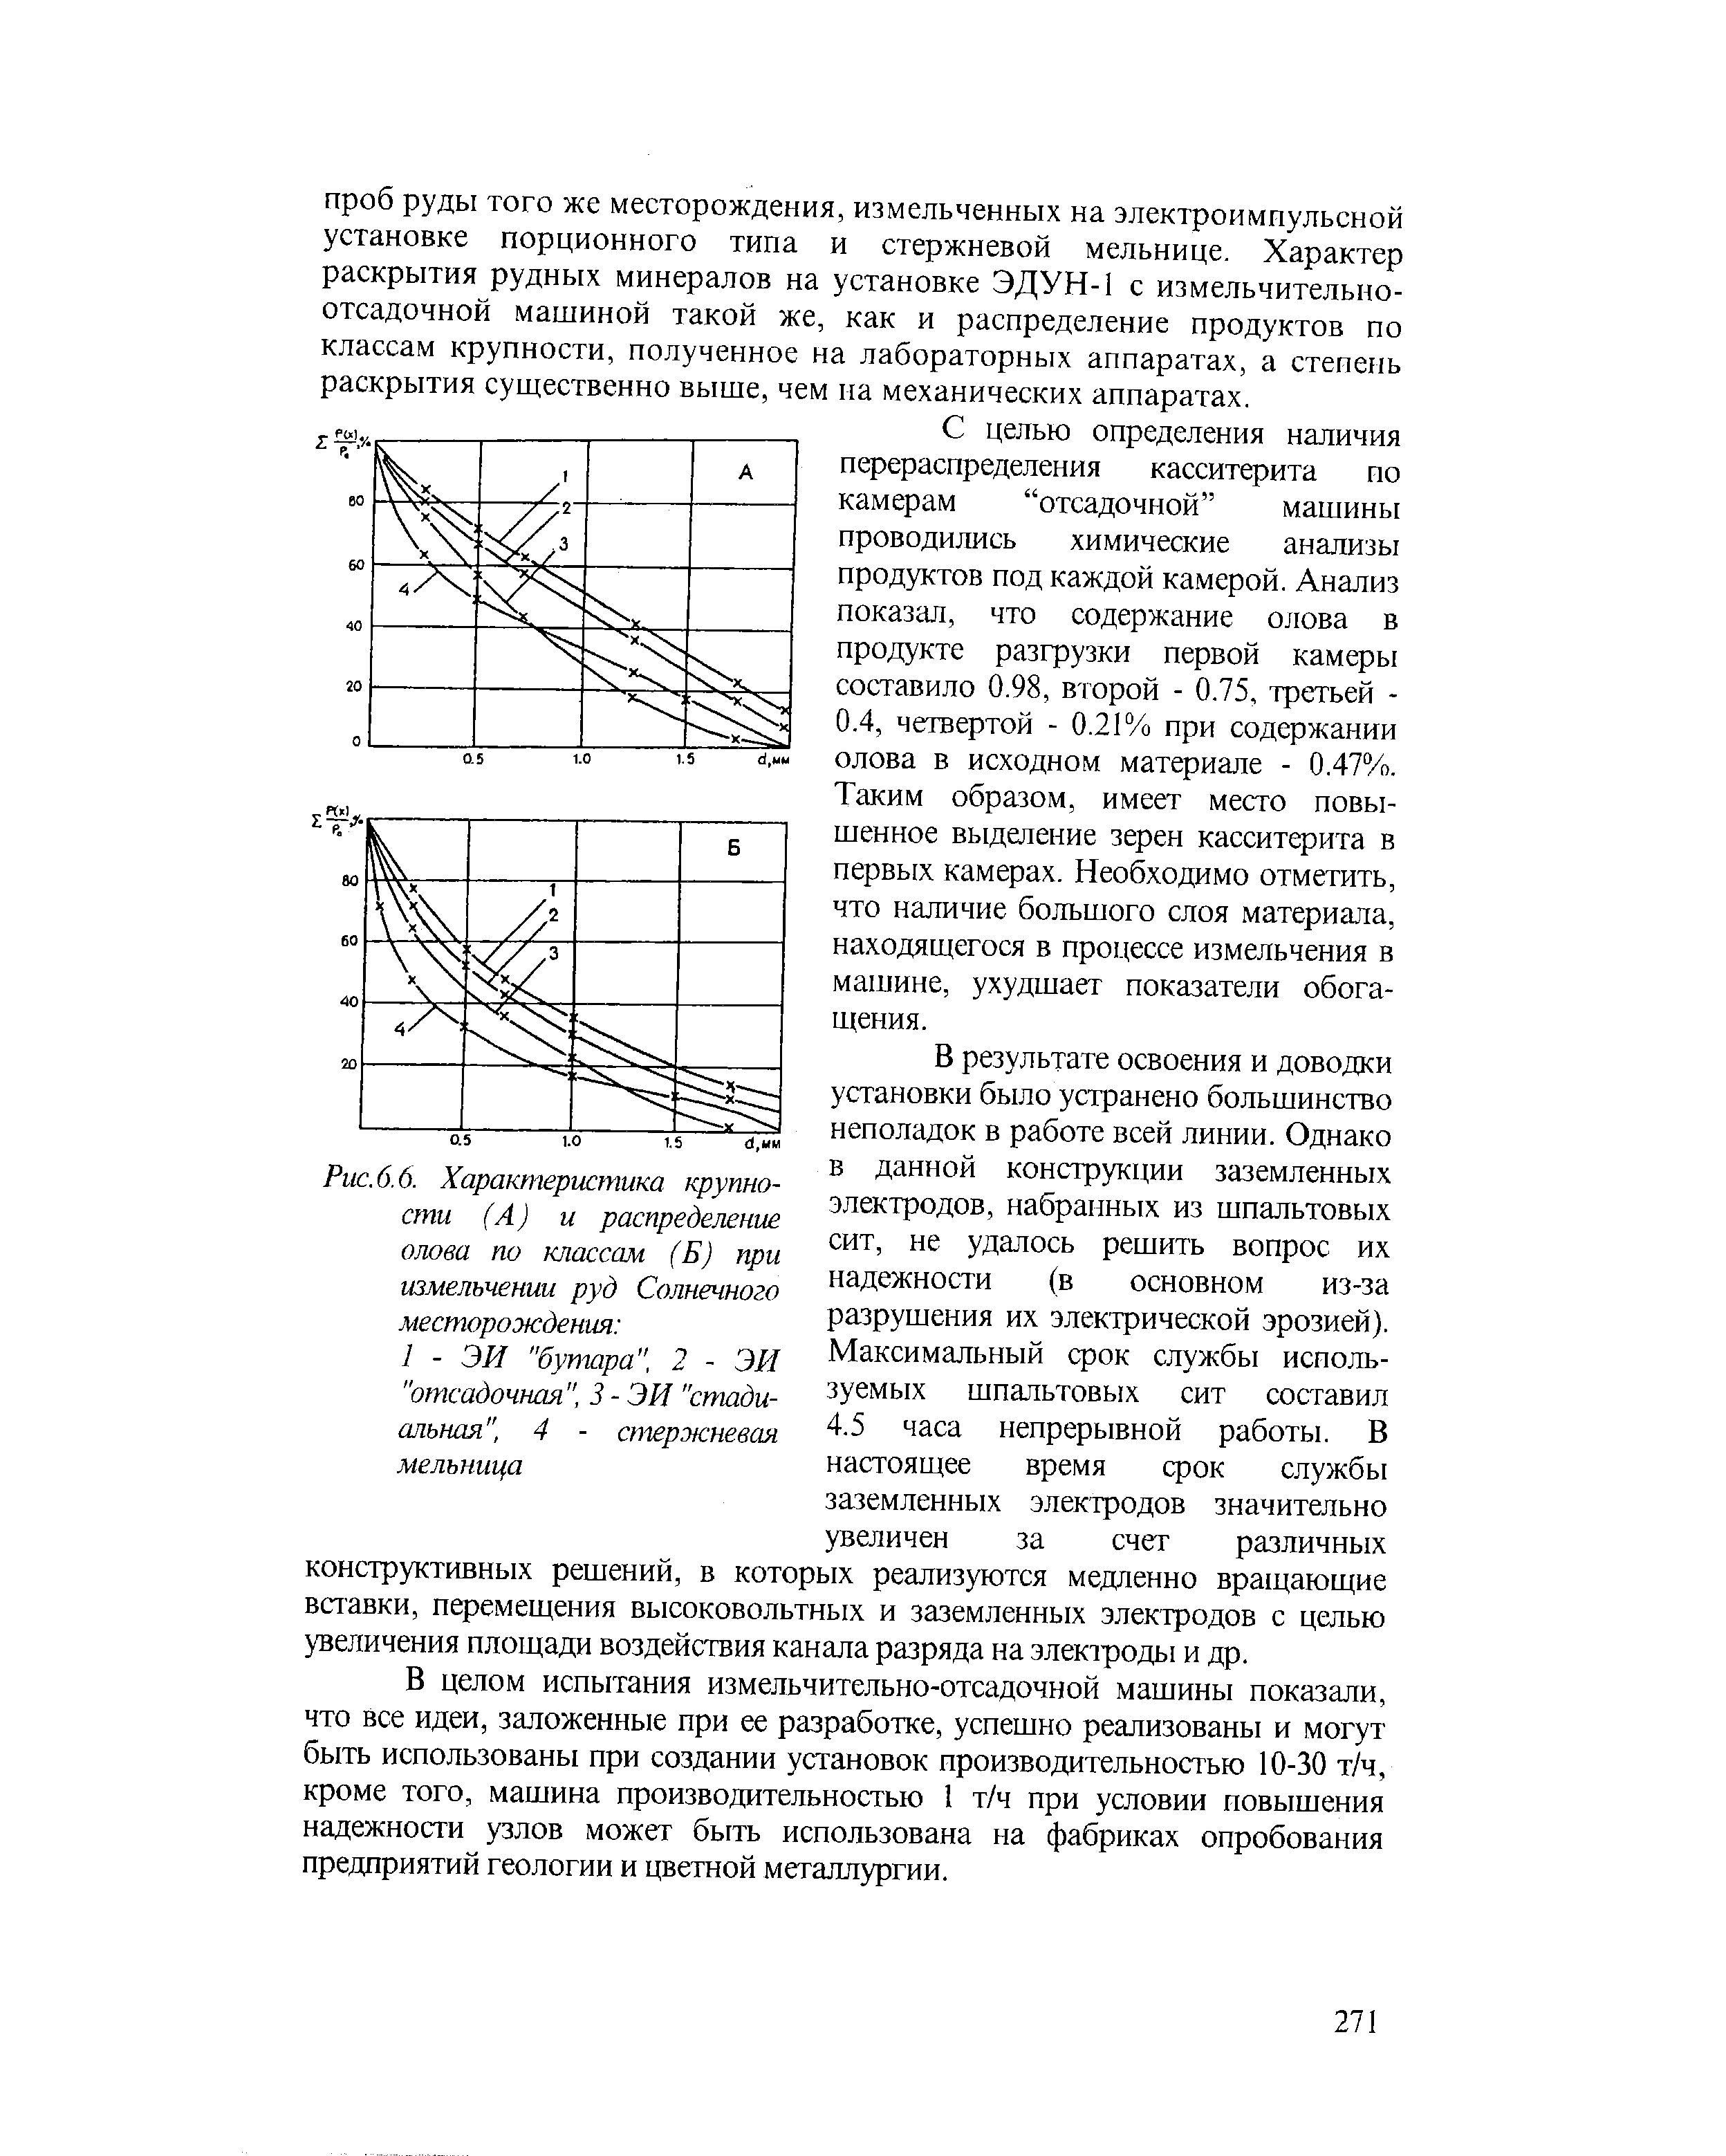 Рис. 6.6. Характеристика крупности (А) и распределение олова по классам (Б) при измельчении руд Солнечного месторождения 
